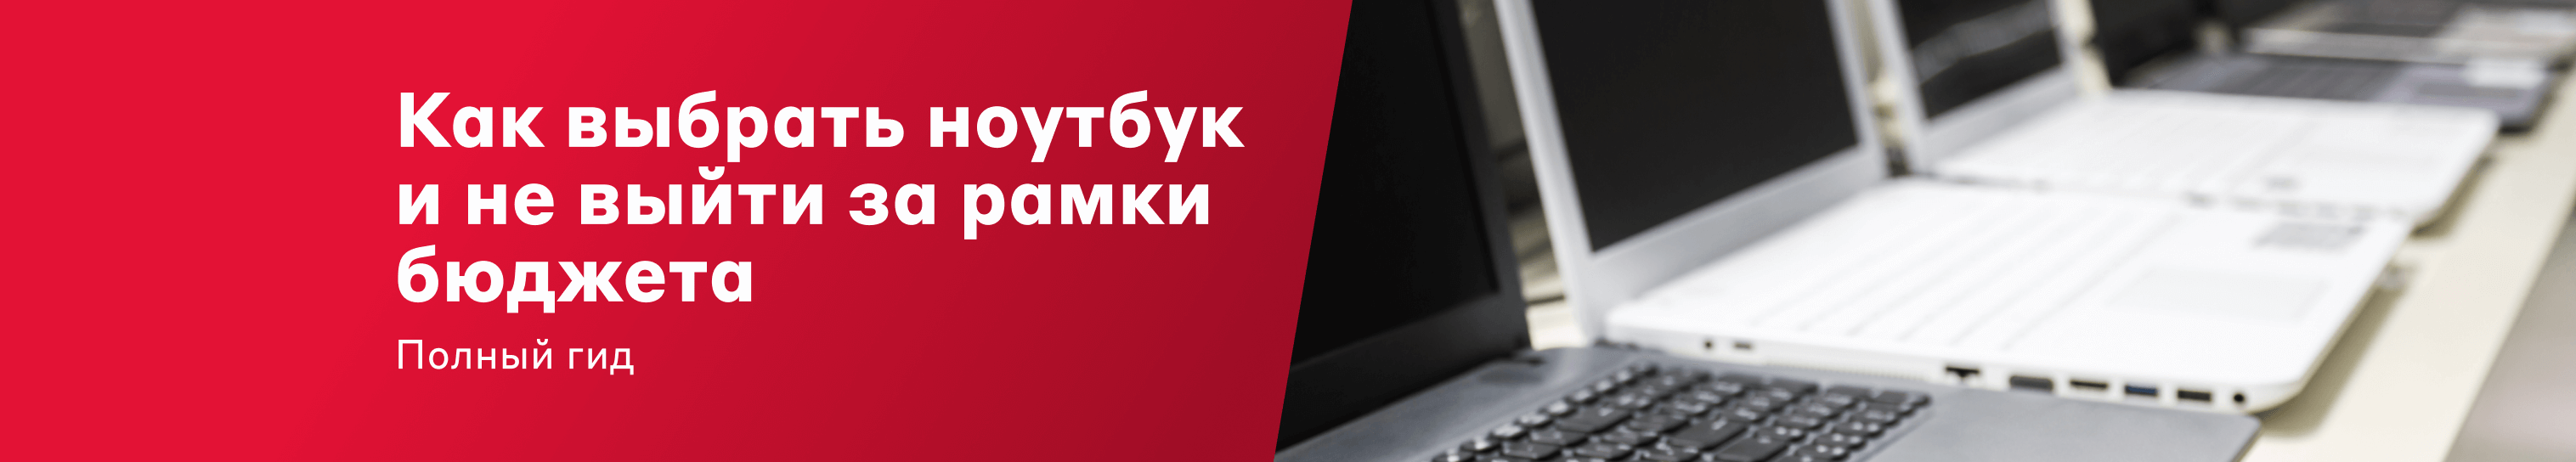 Ноутбук Купить В Новокузнецке До 45000